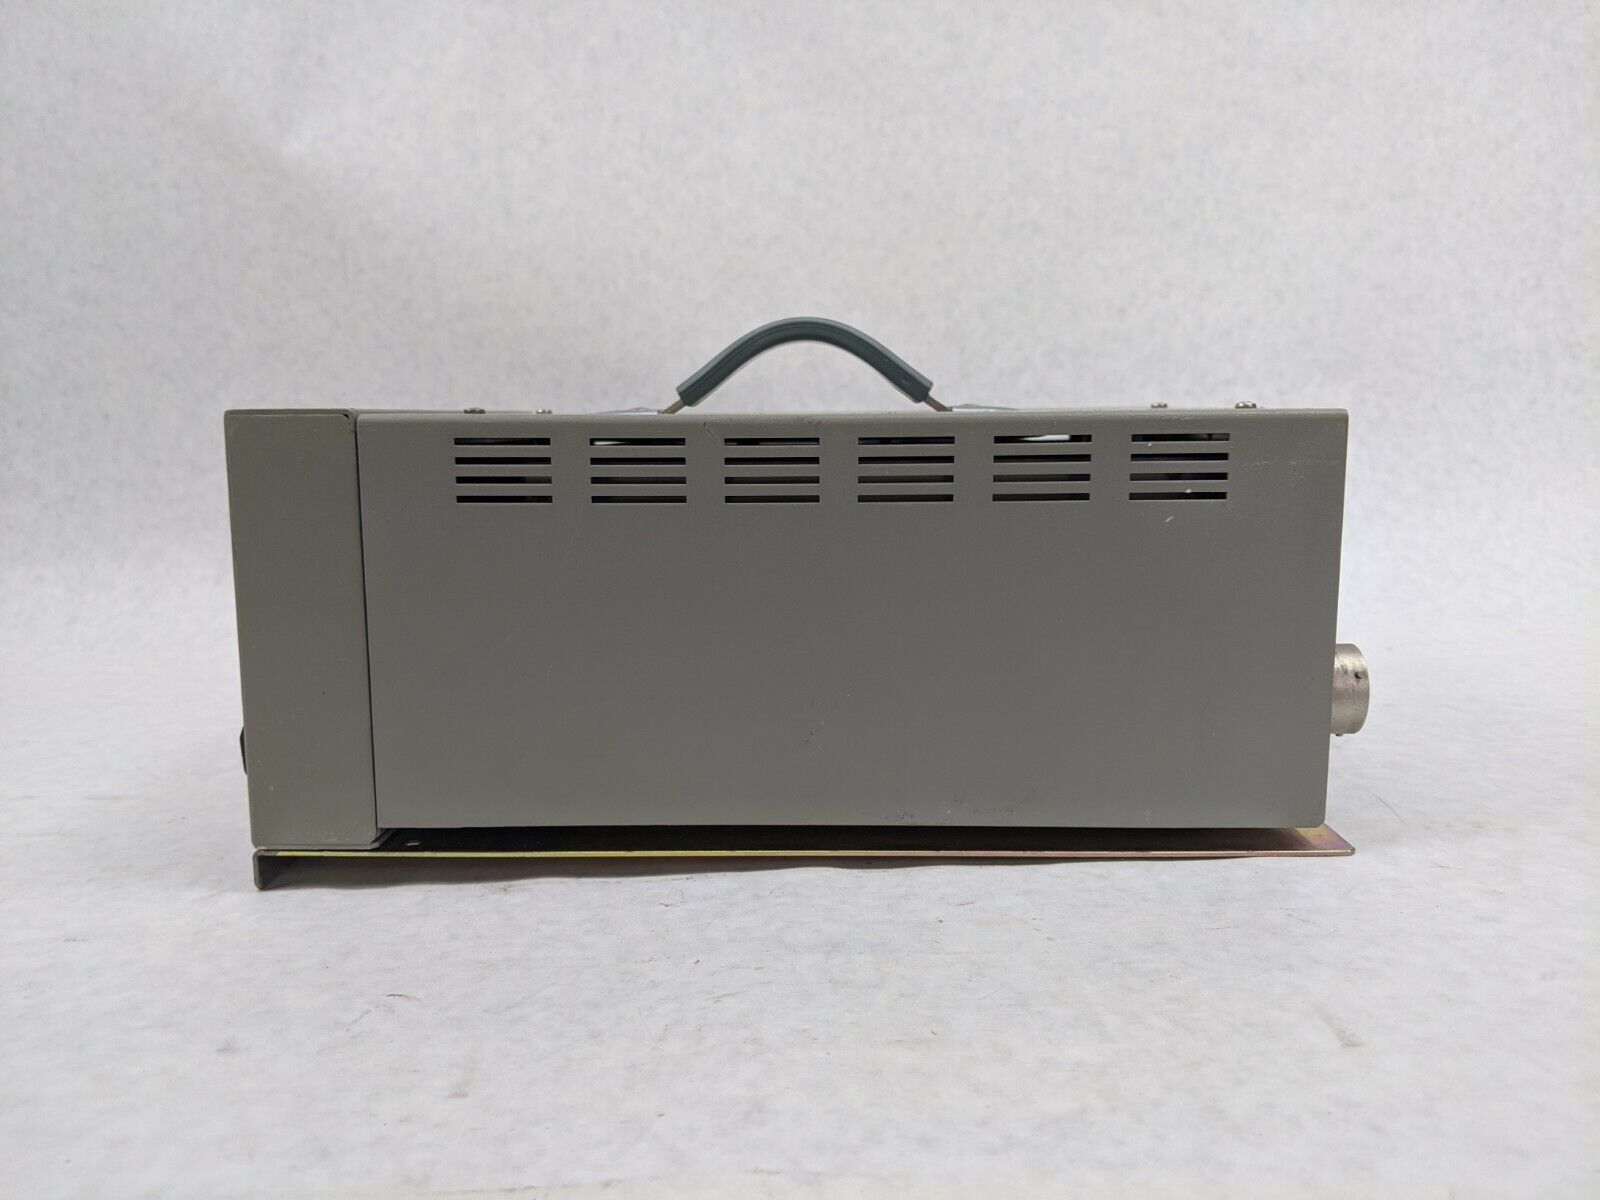 Ikegami MA-230A Multicore Cable Adaptor Used